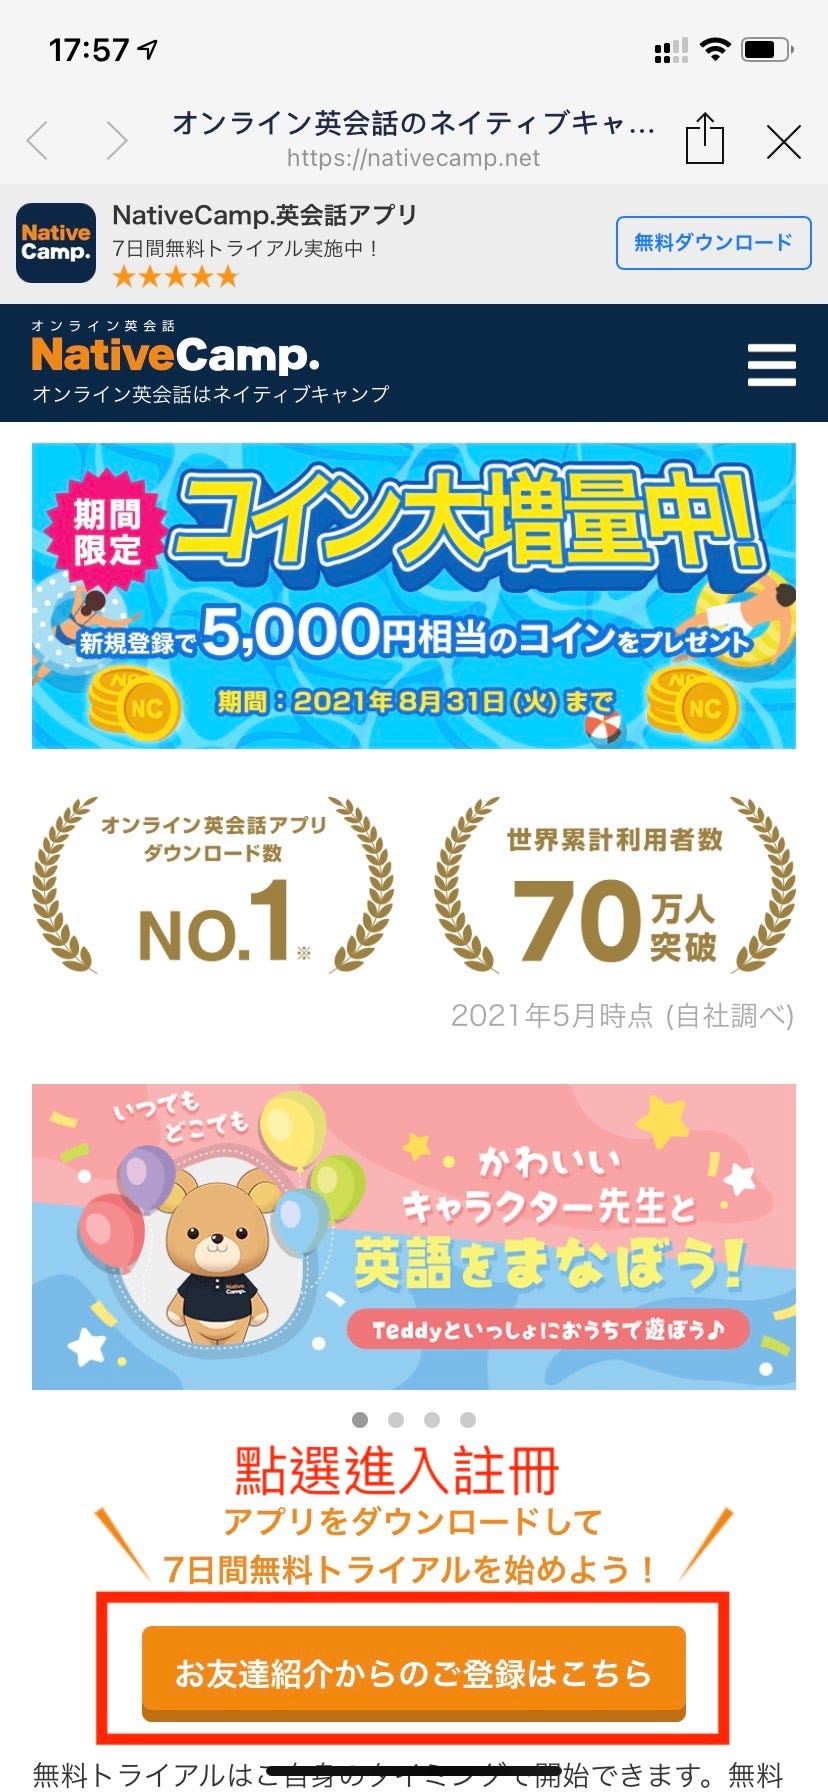 [資訊] NativeCamp 12月等值8000日圓優惠 FB社團